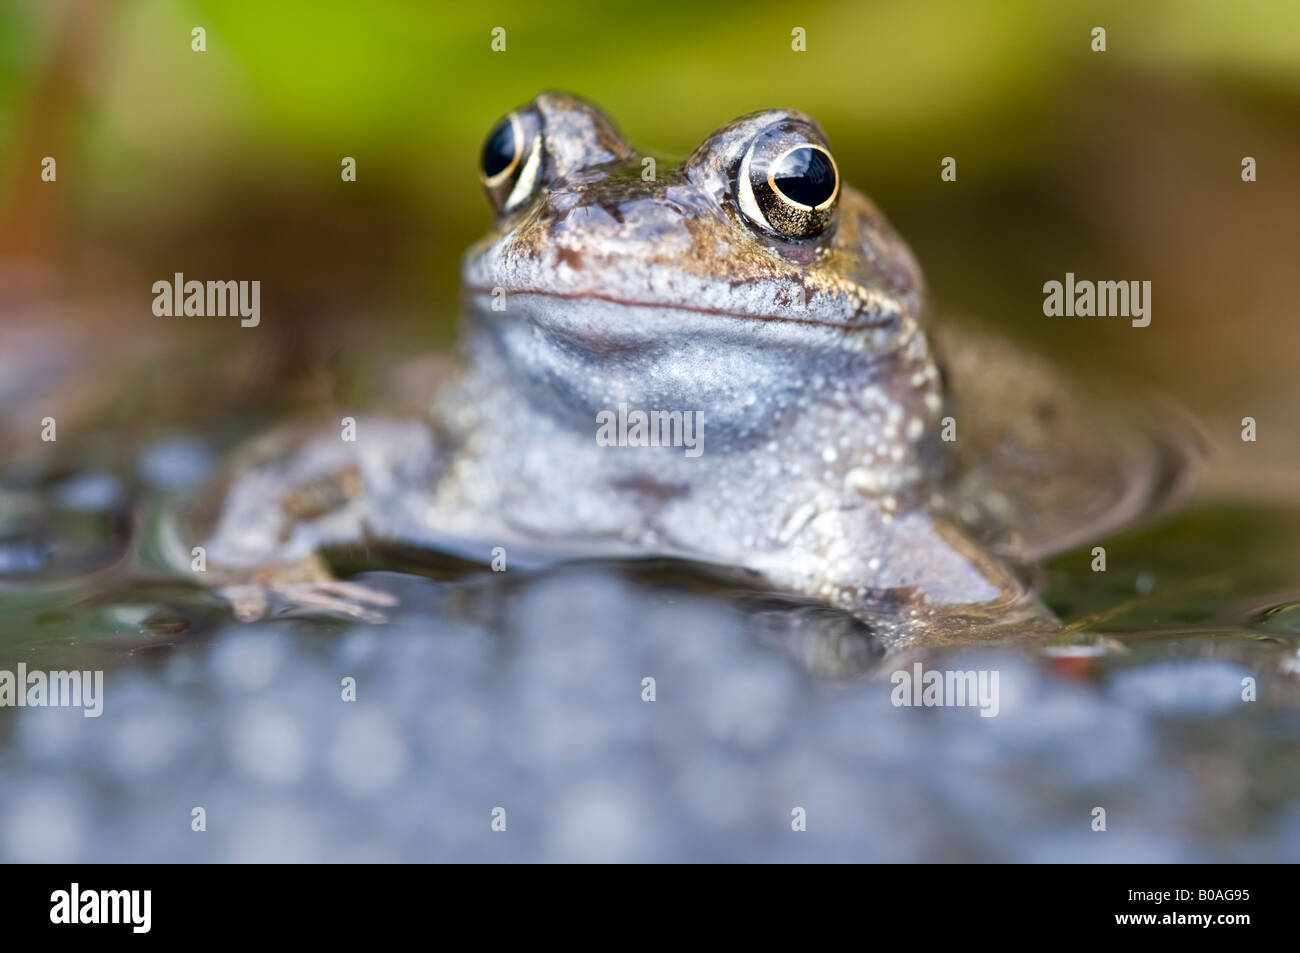 Rana comune (Rana temporaria) in un laghetto in giardino con frogspawn Foto Stock